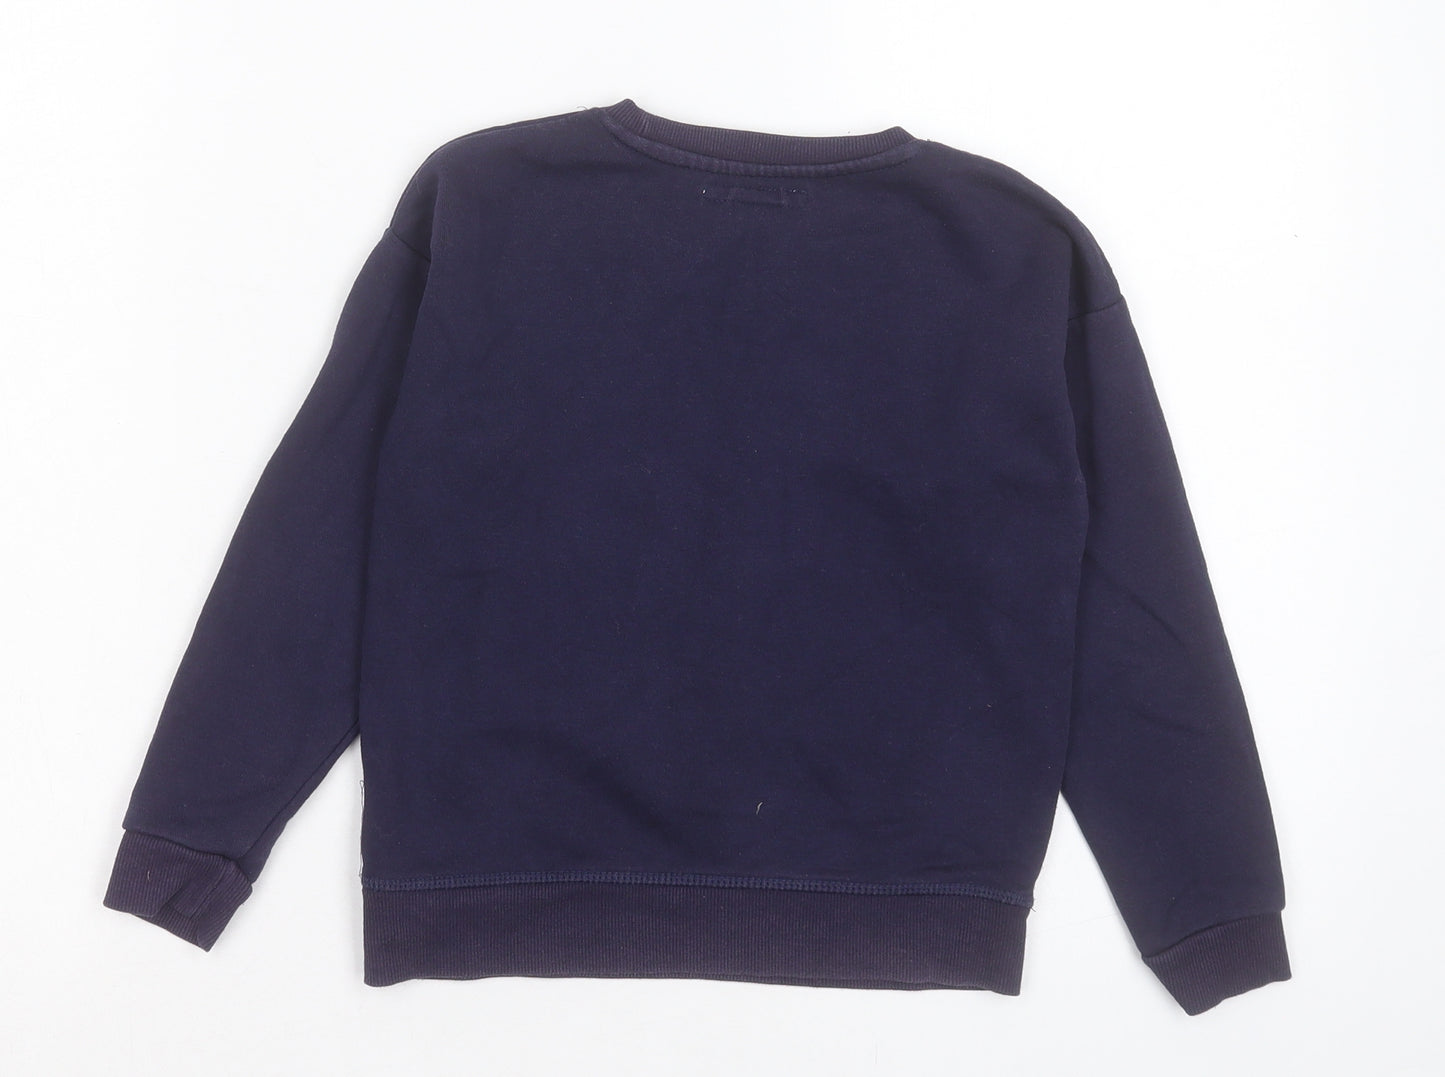 Primark Girls Purple Cotton Pullover Sweatshirt Size 6-7 Years Pullover - Always Shine Bright